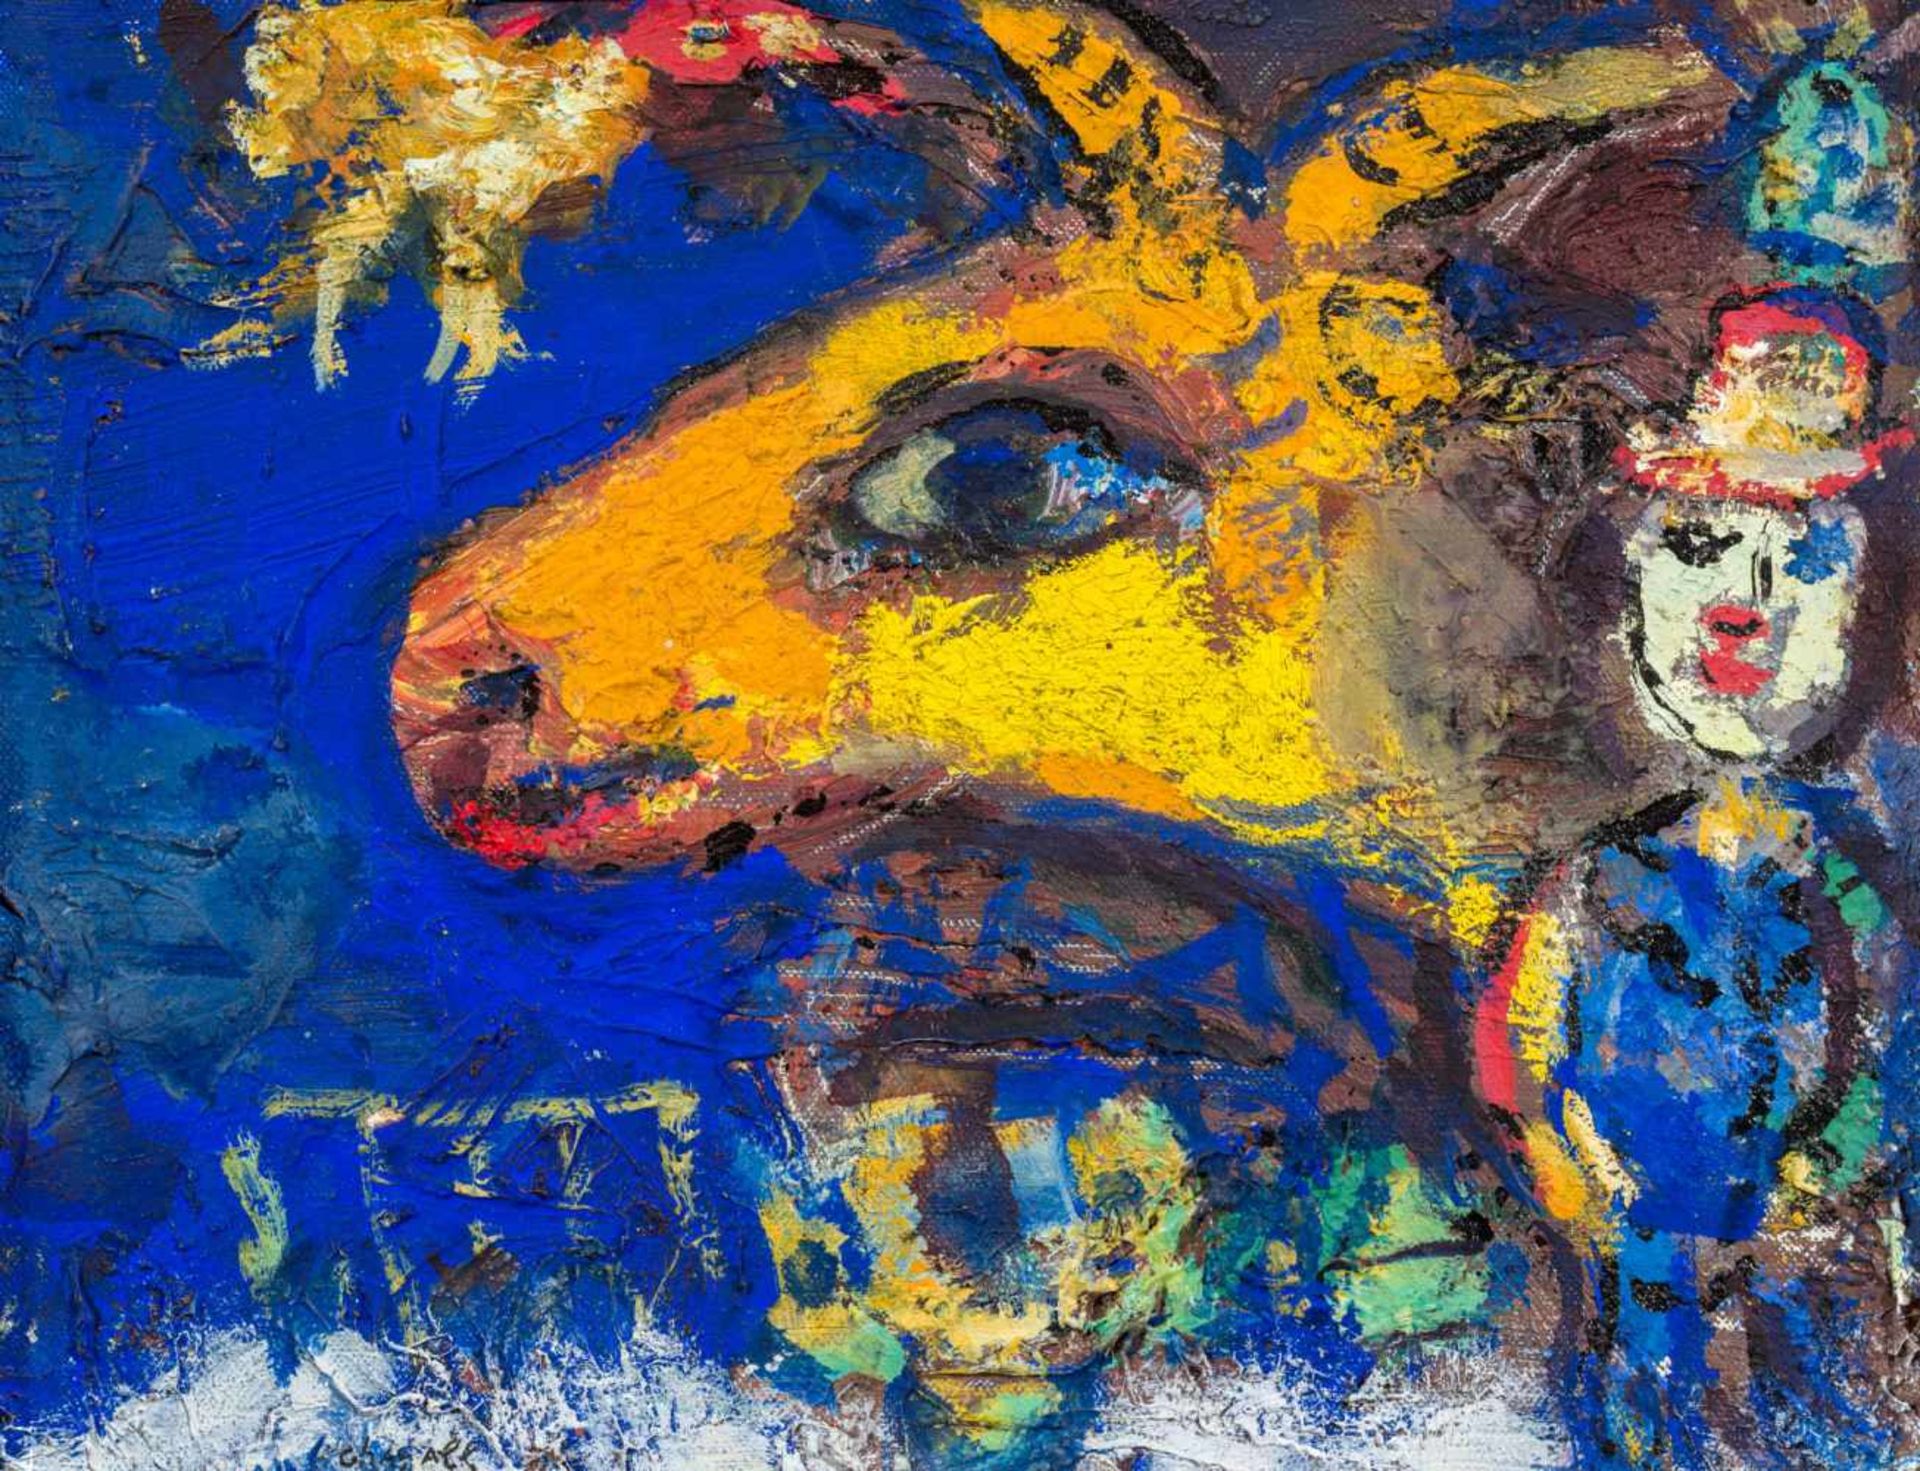 Marc Chagall1887–1985Le profil du bouc jauneum 1962Öl auf Leinwand19 x 24 cmNachlass des